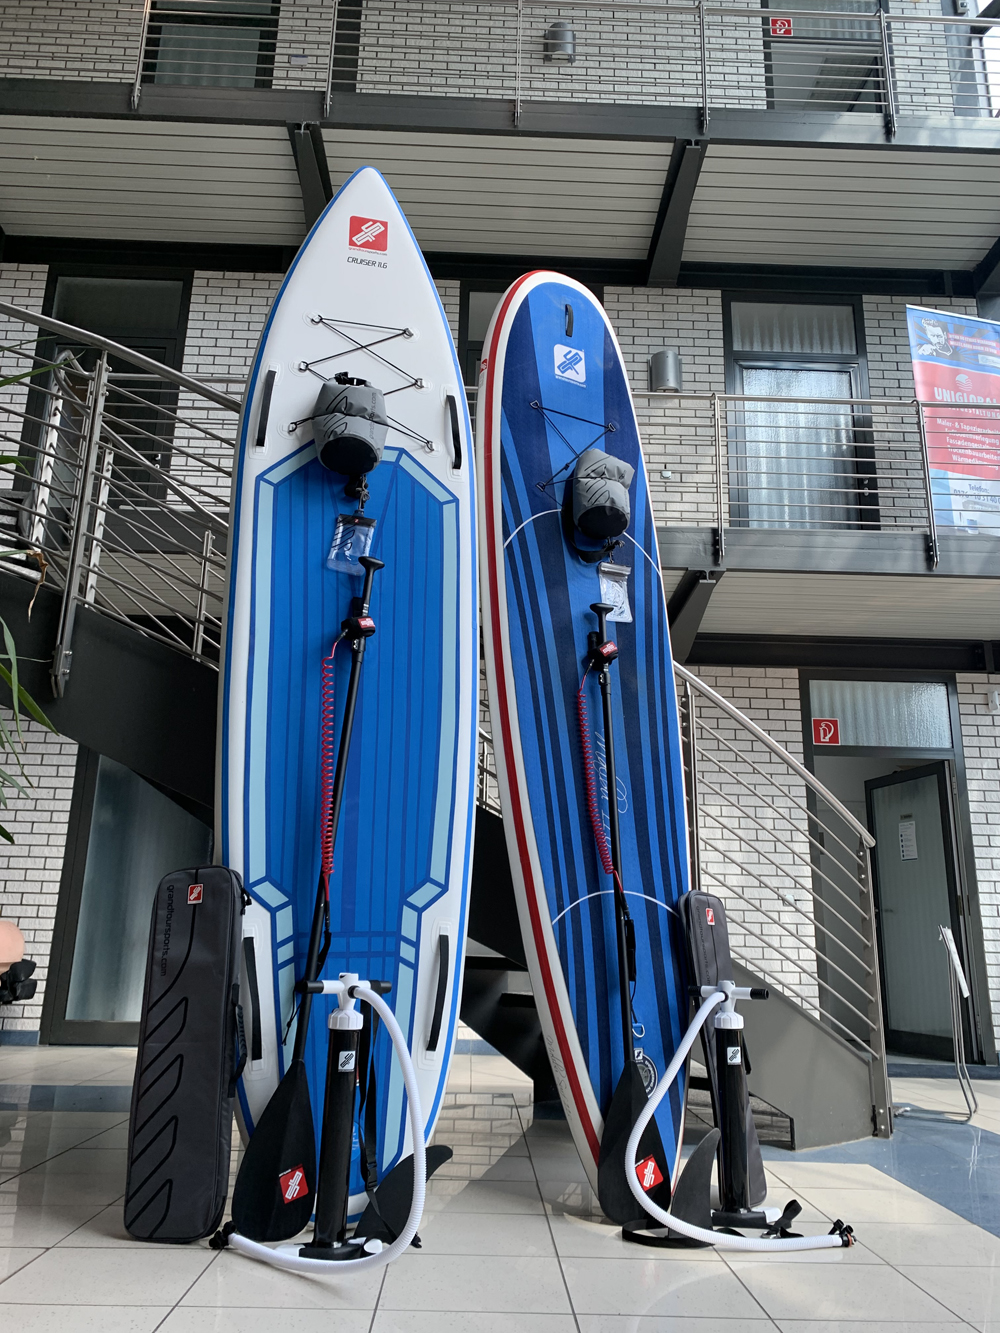 GTS SUP-Board Verleih "Malibu Surf" & "Cruiser Surf" Wochenendmiete